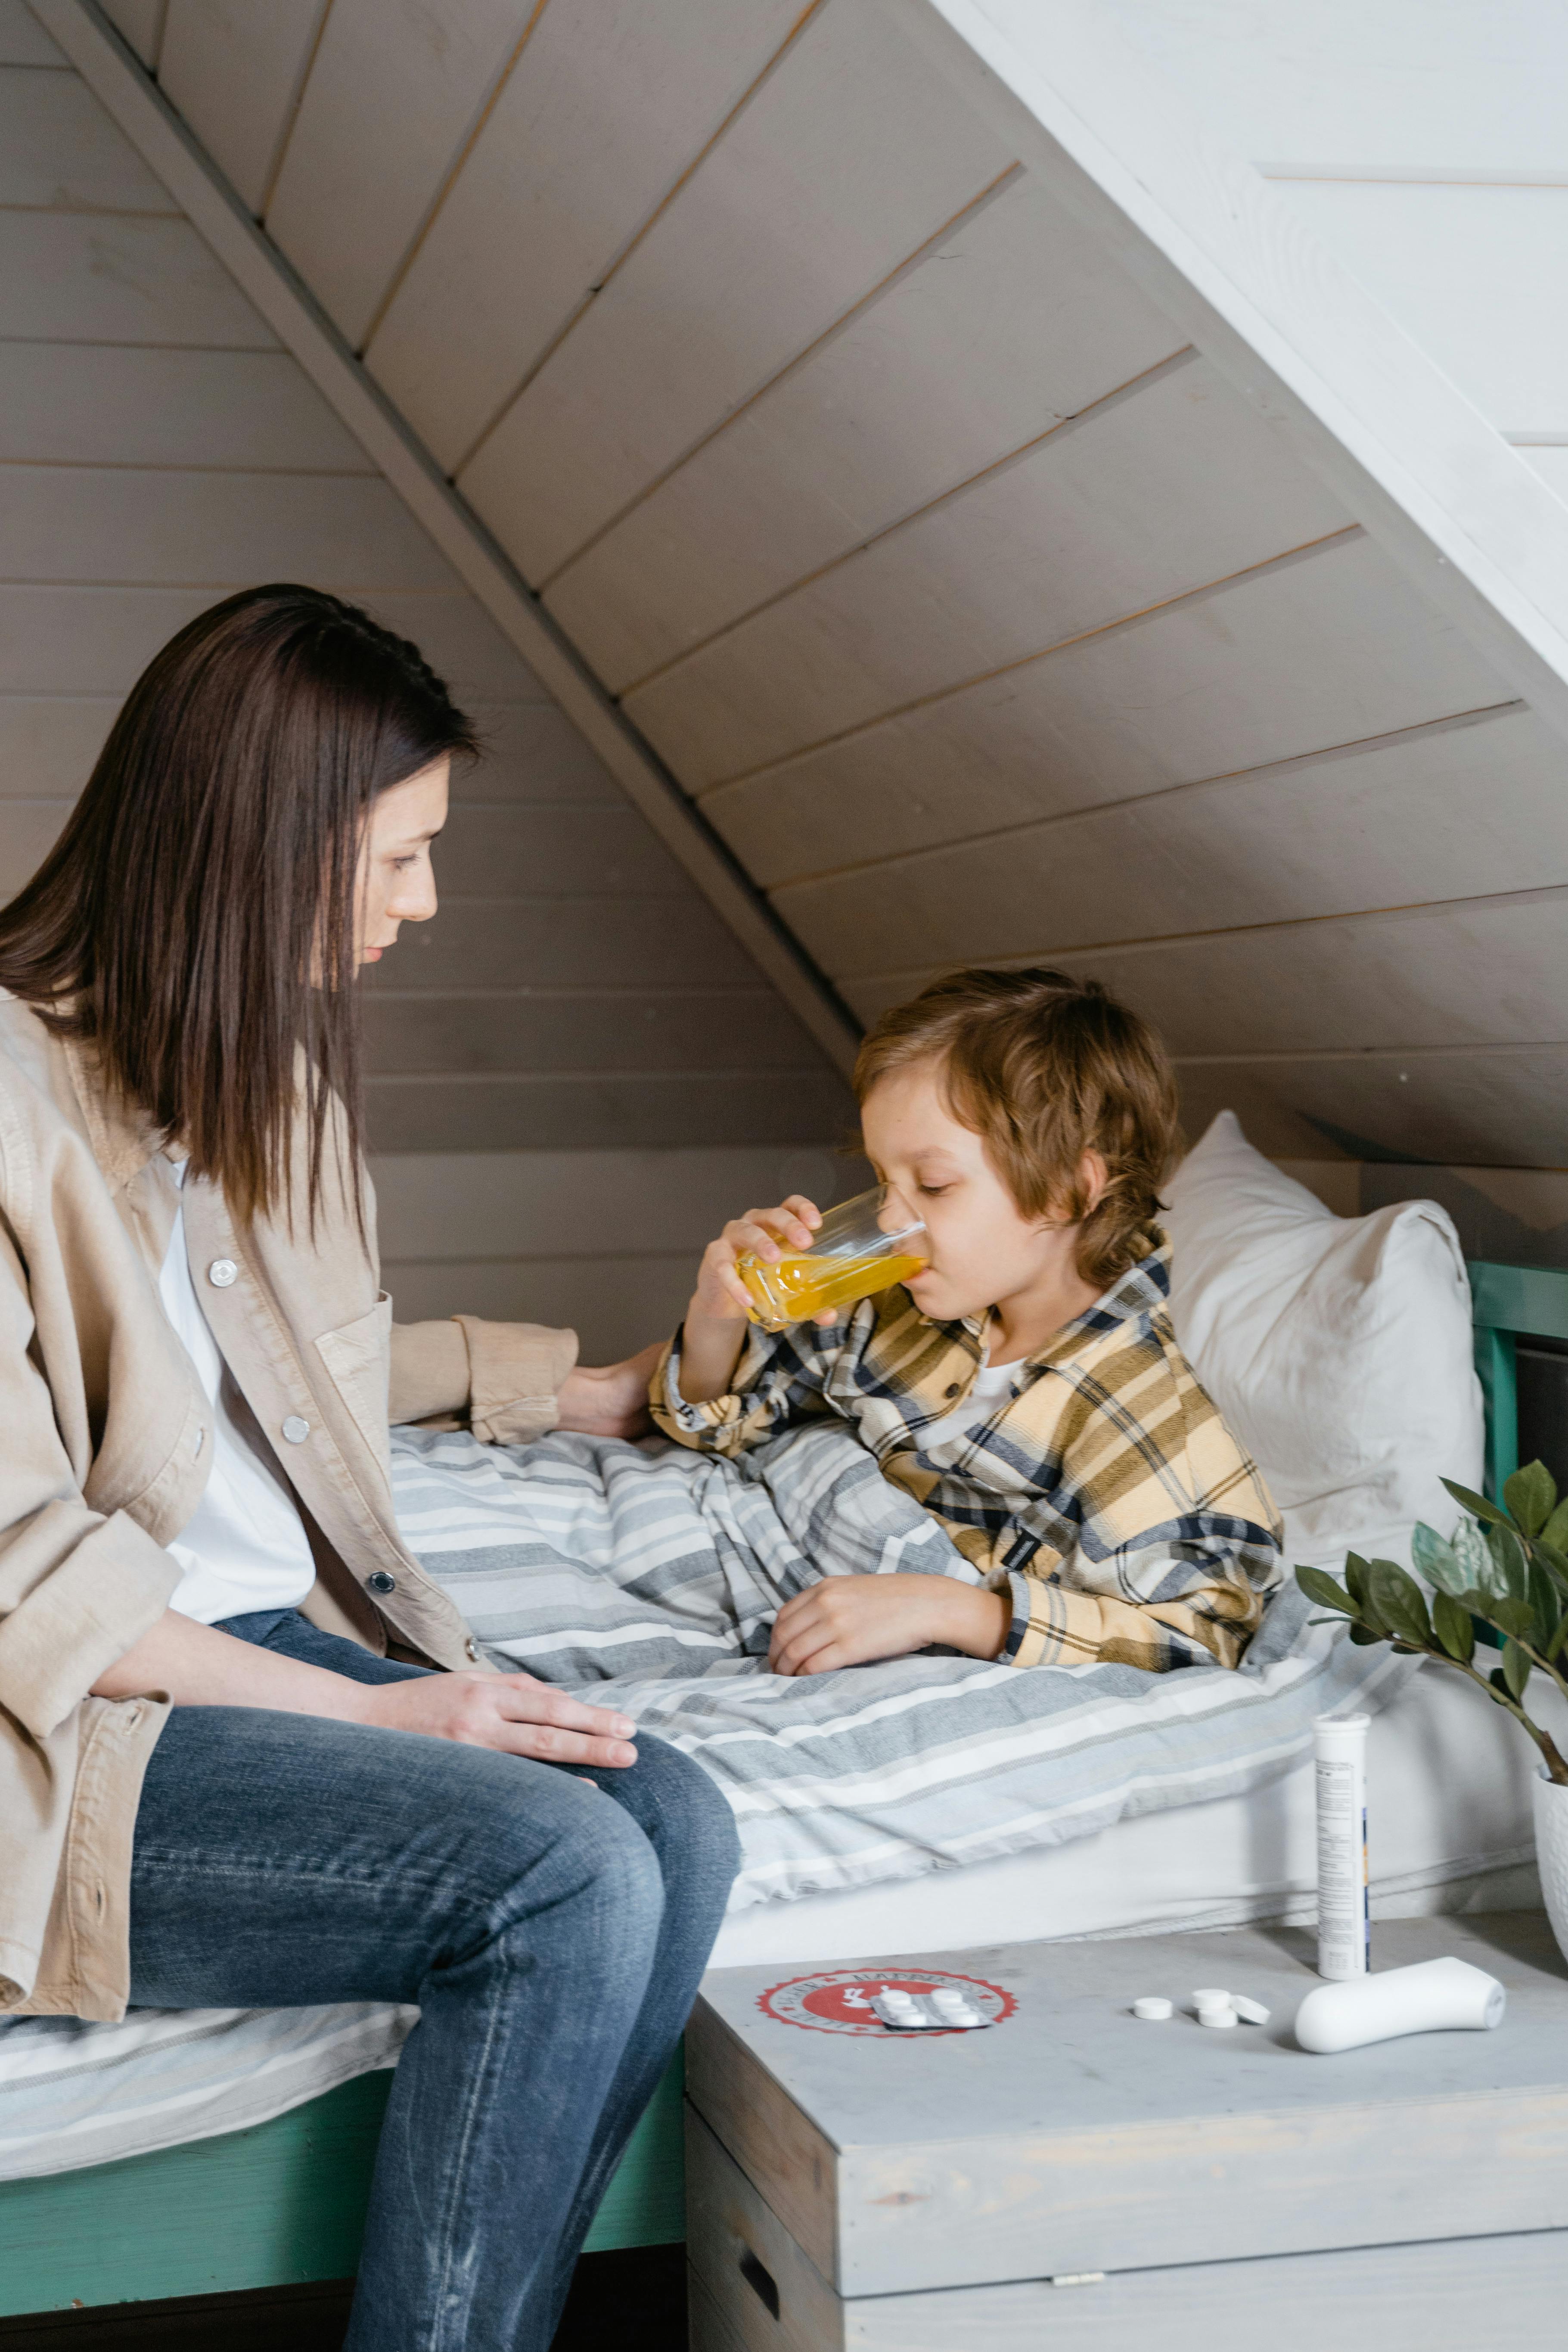 Une femme parle à un enfant qui boit du jus de fruit au lit | Source : Pexels